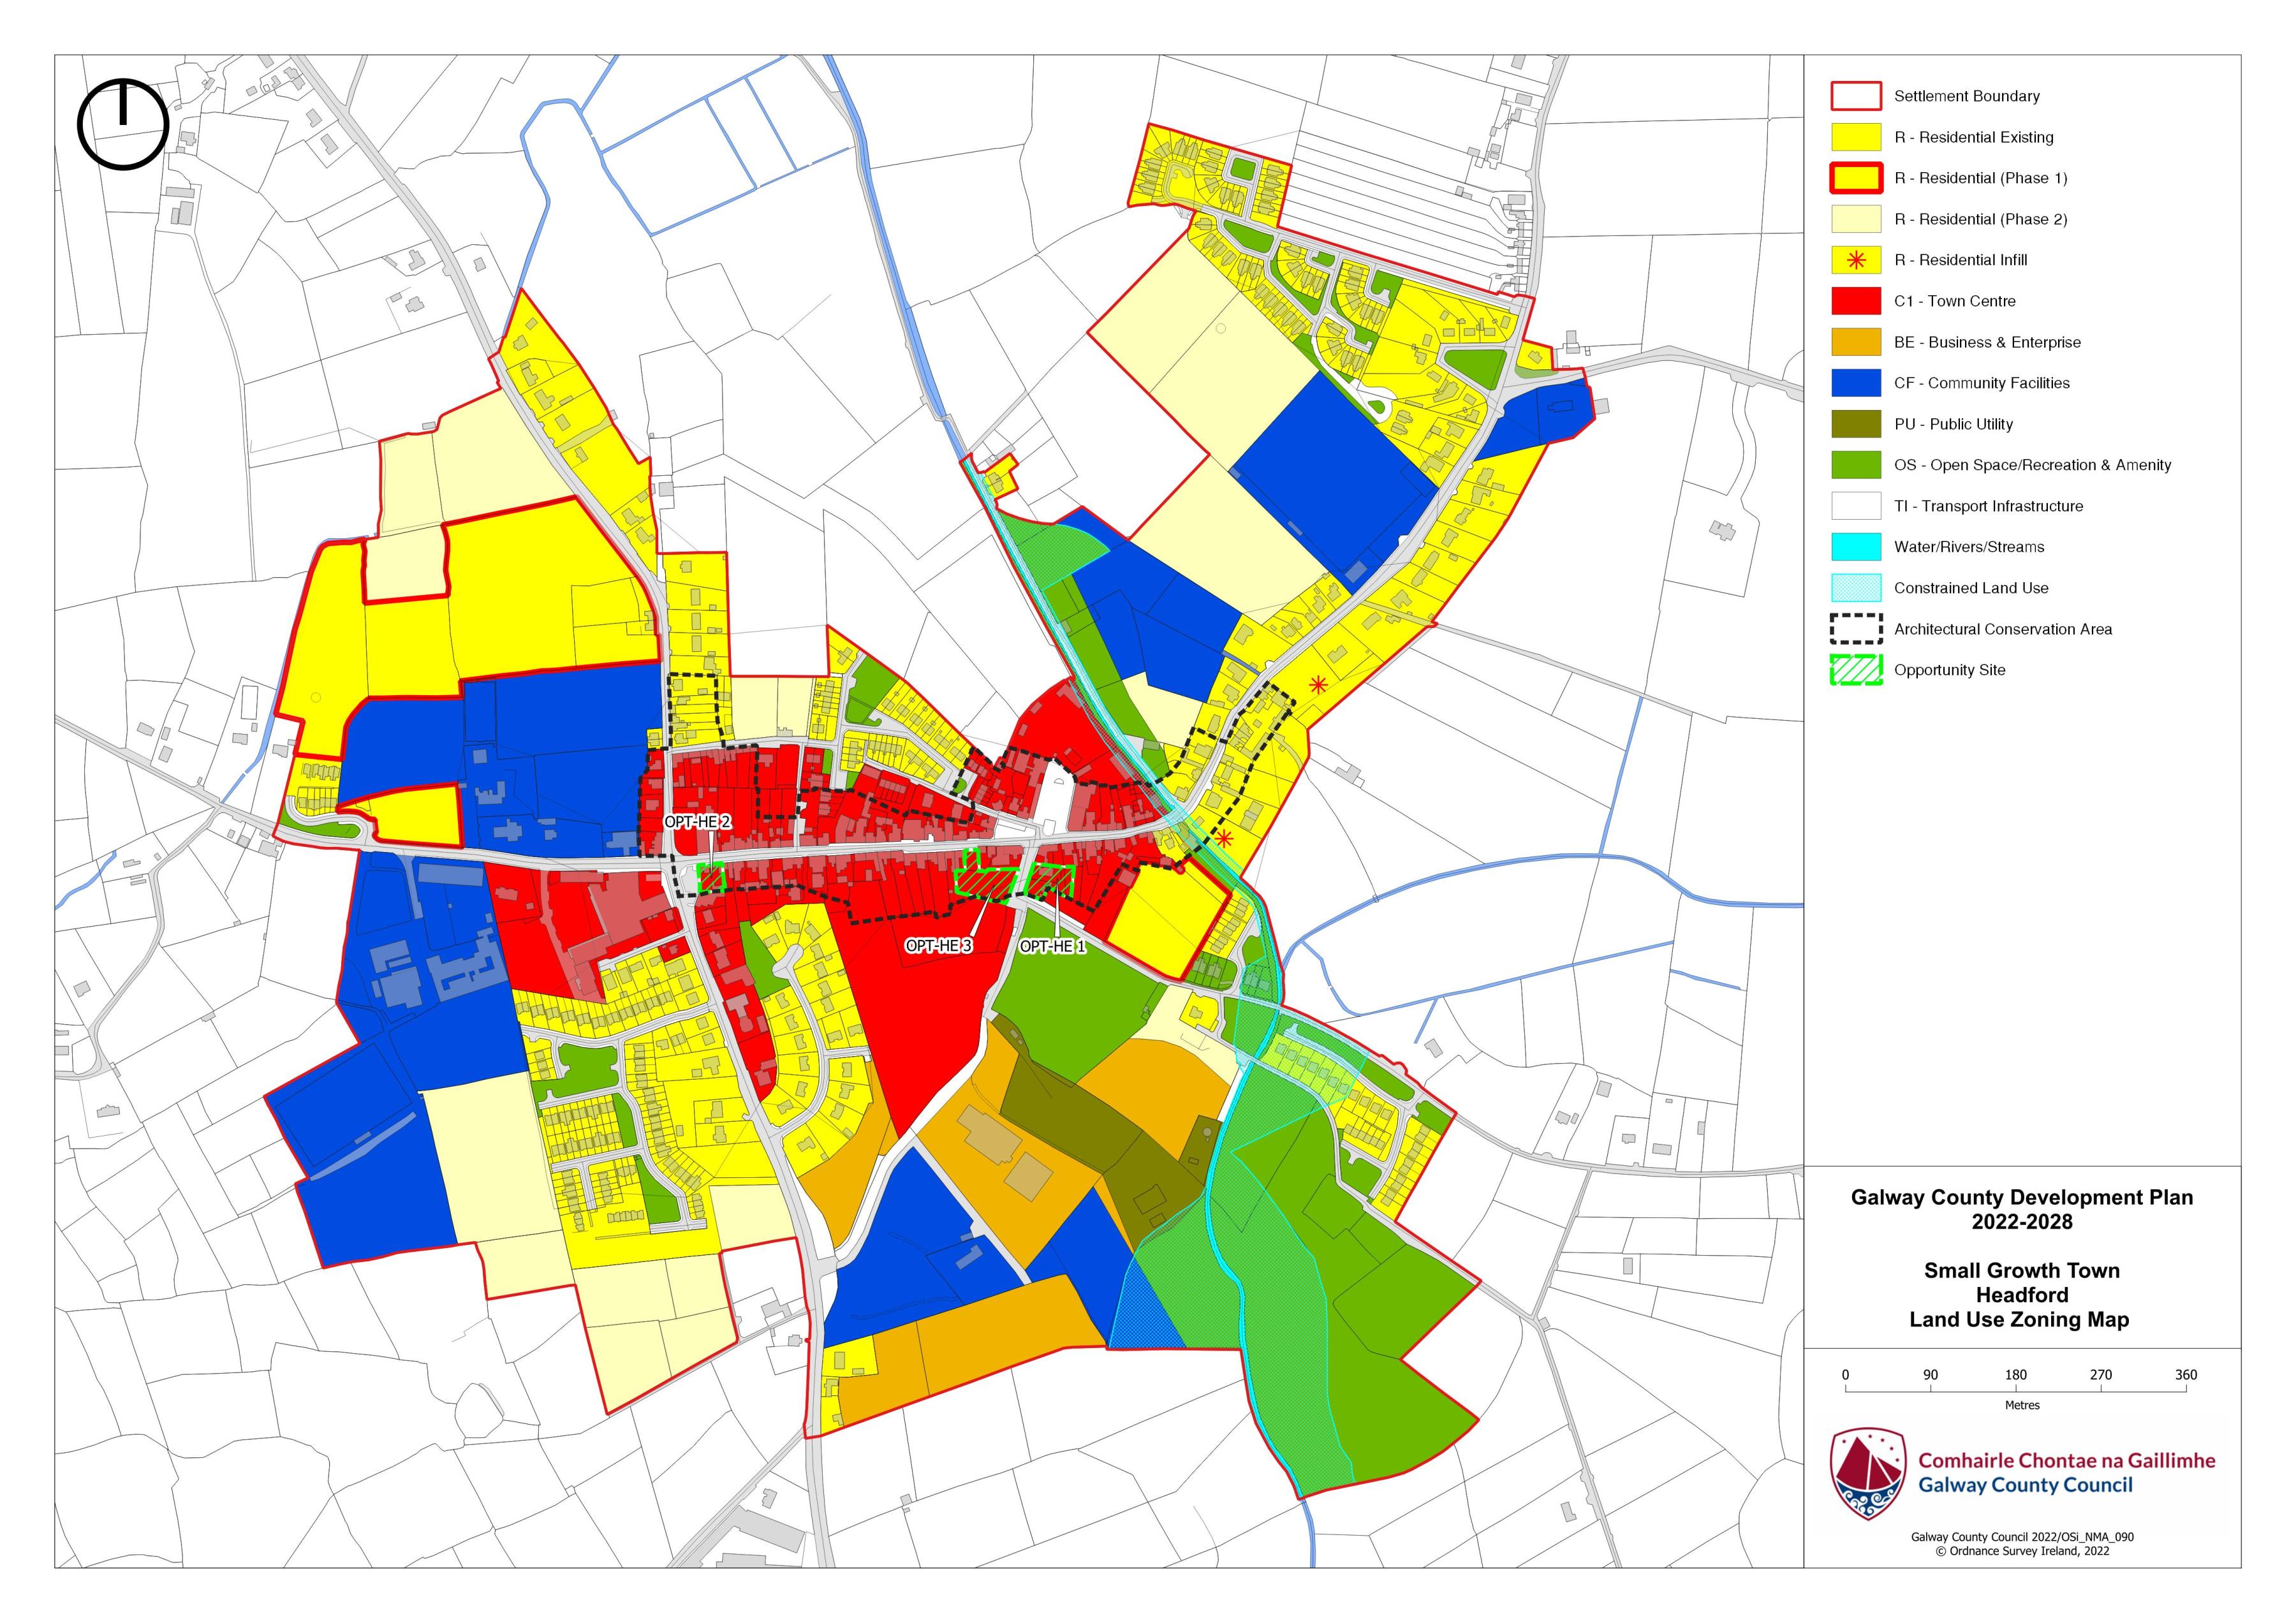 Headford Land Use Zoning Map